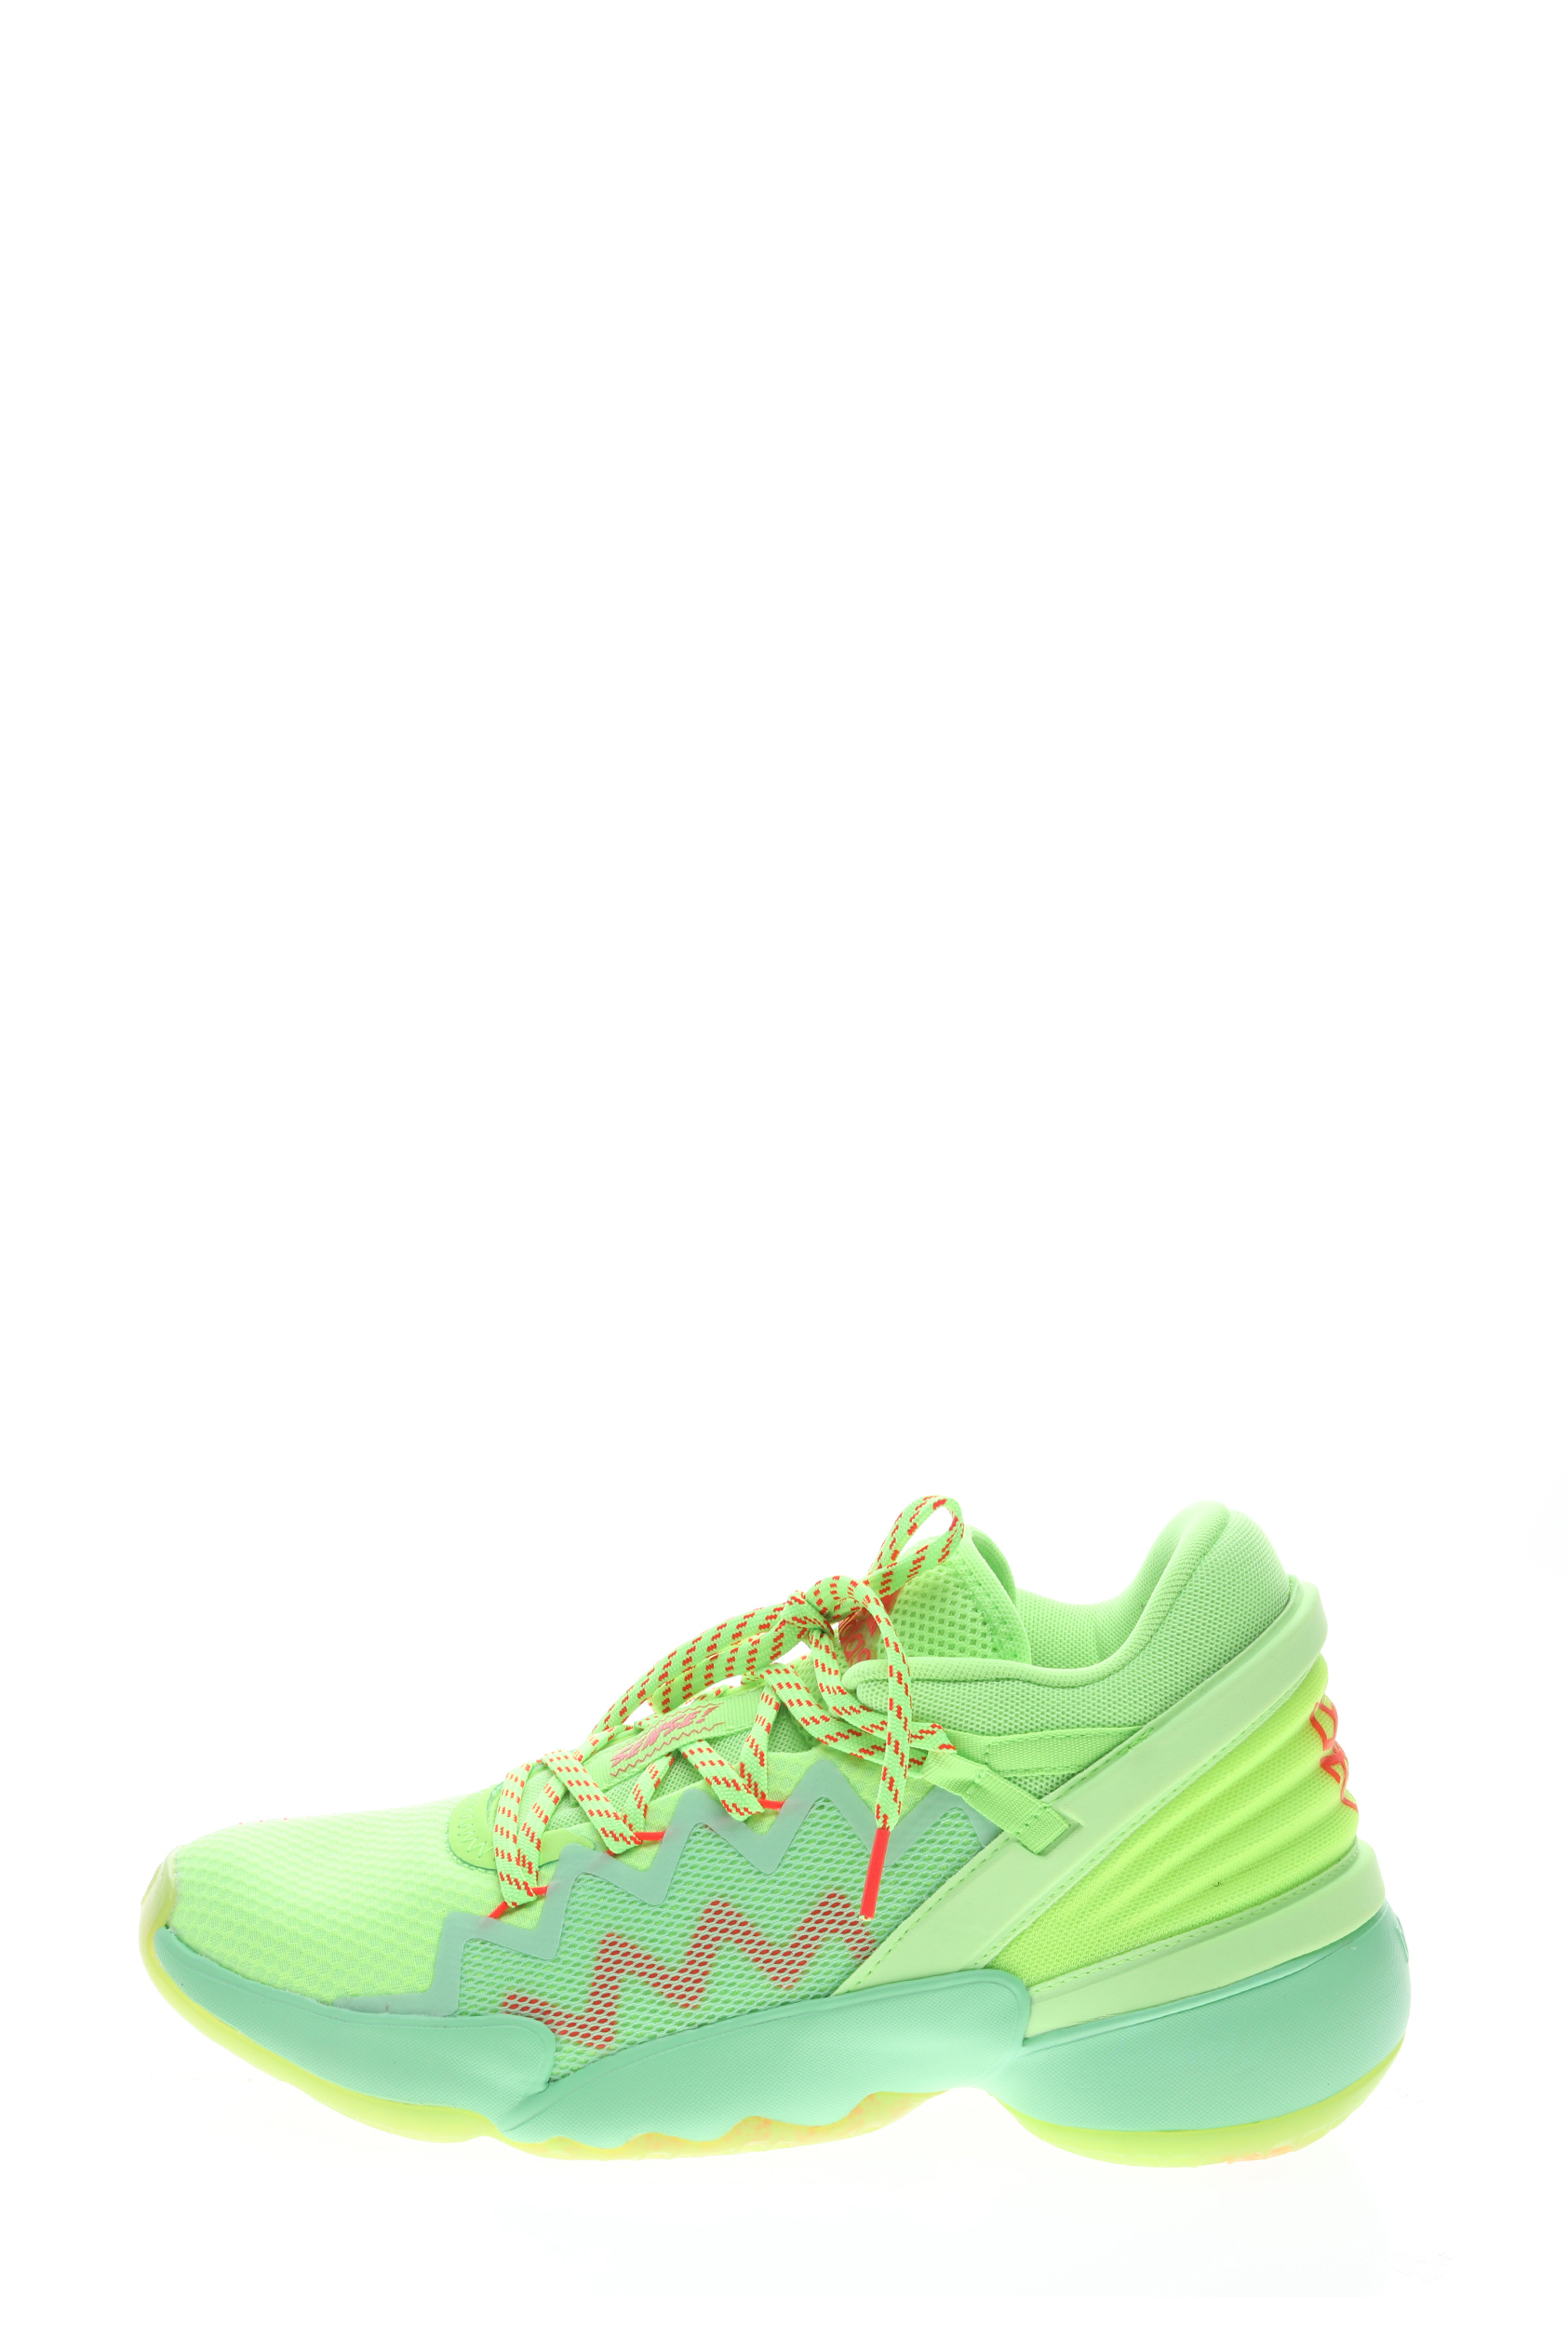 Ανδρικά/Παπούτσια/Αθλητικά/Running adidas Performance - Unisex παπούτσια basketball adidas Performance D.O.N. Issue 2 πράσινα